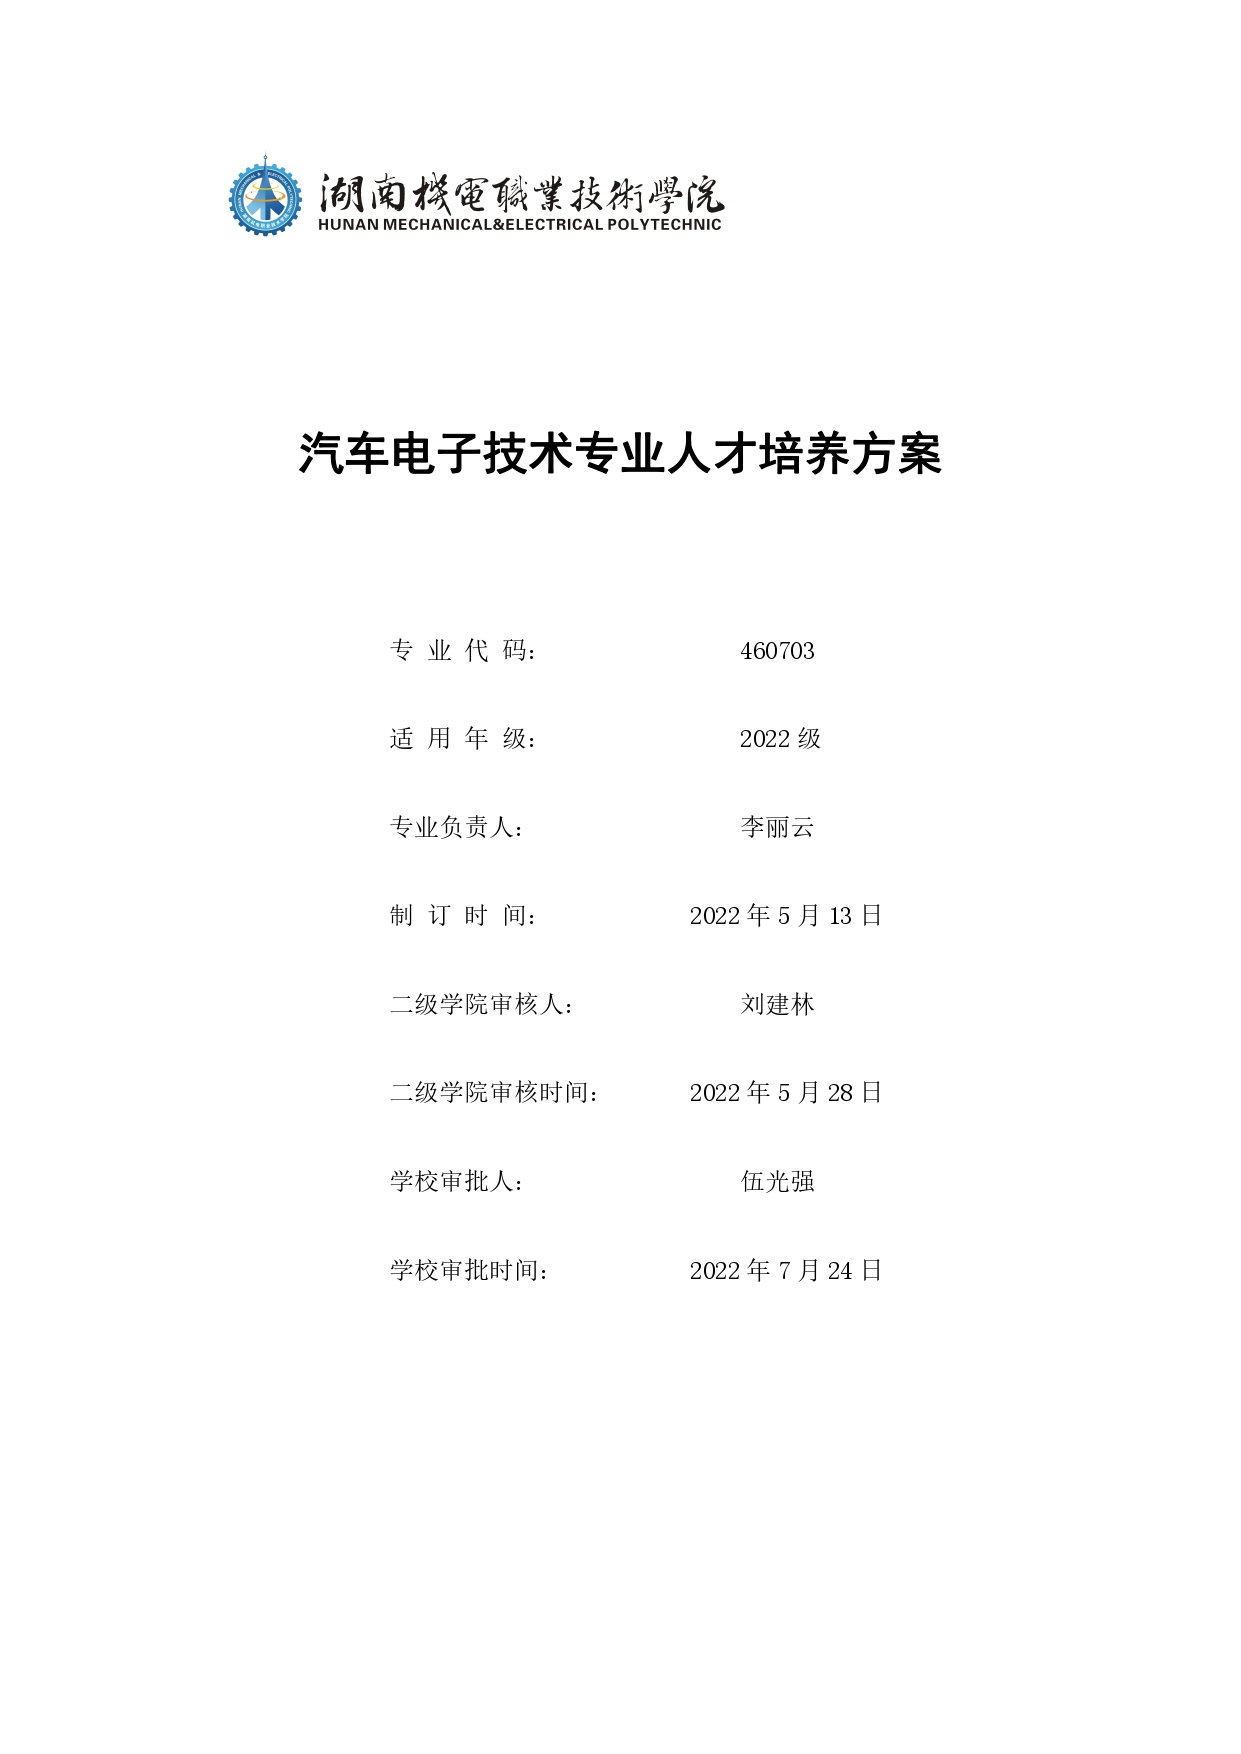 湖南机电职业技术学院2022版汽车电子技术专业人才培养方案V6_page-0001.jpg